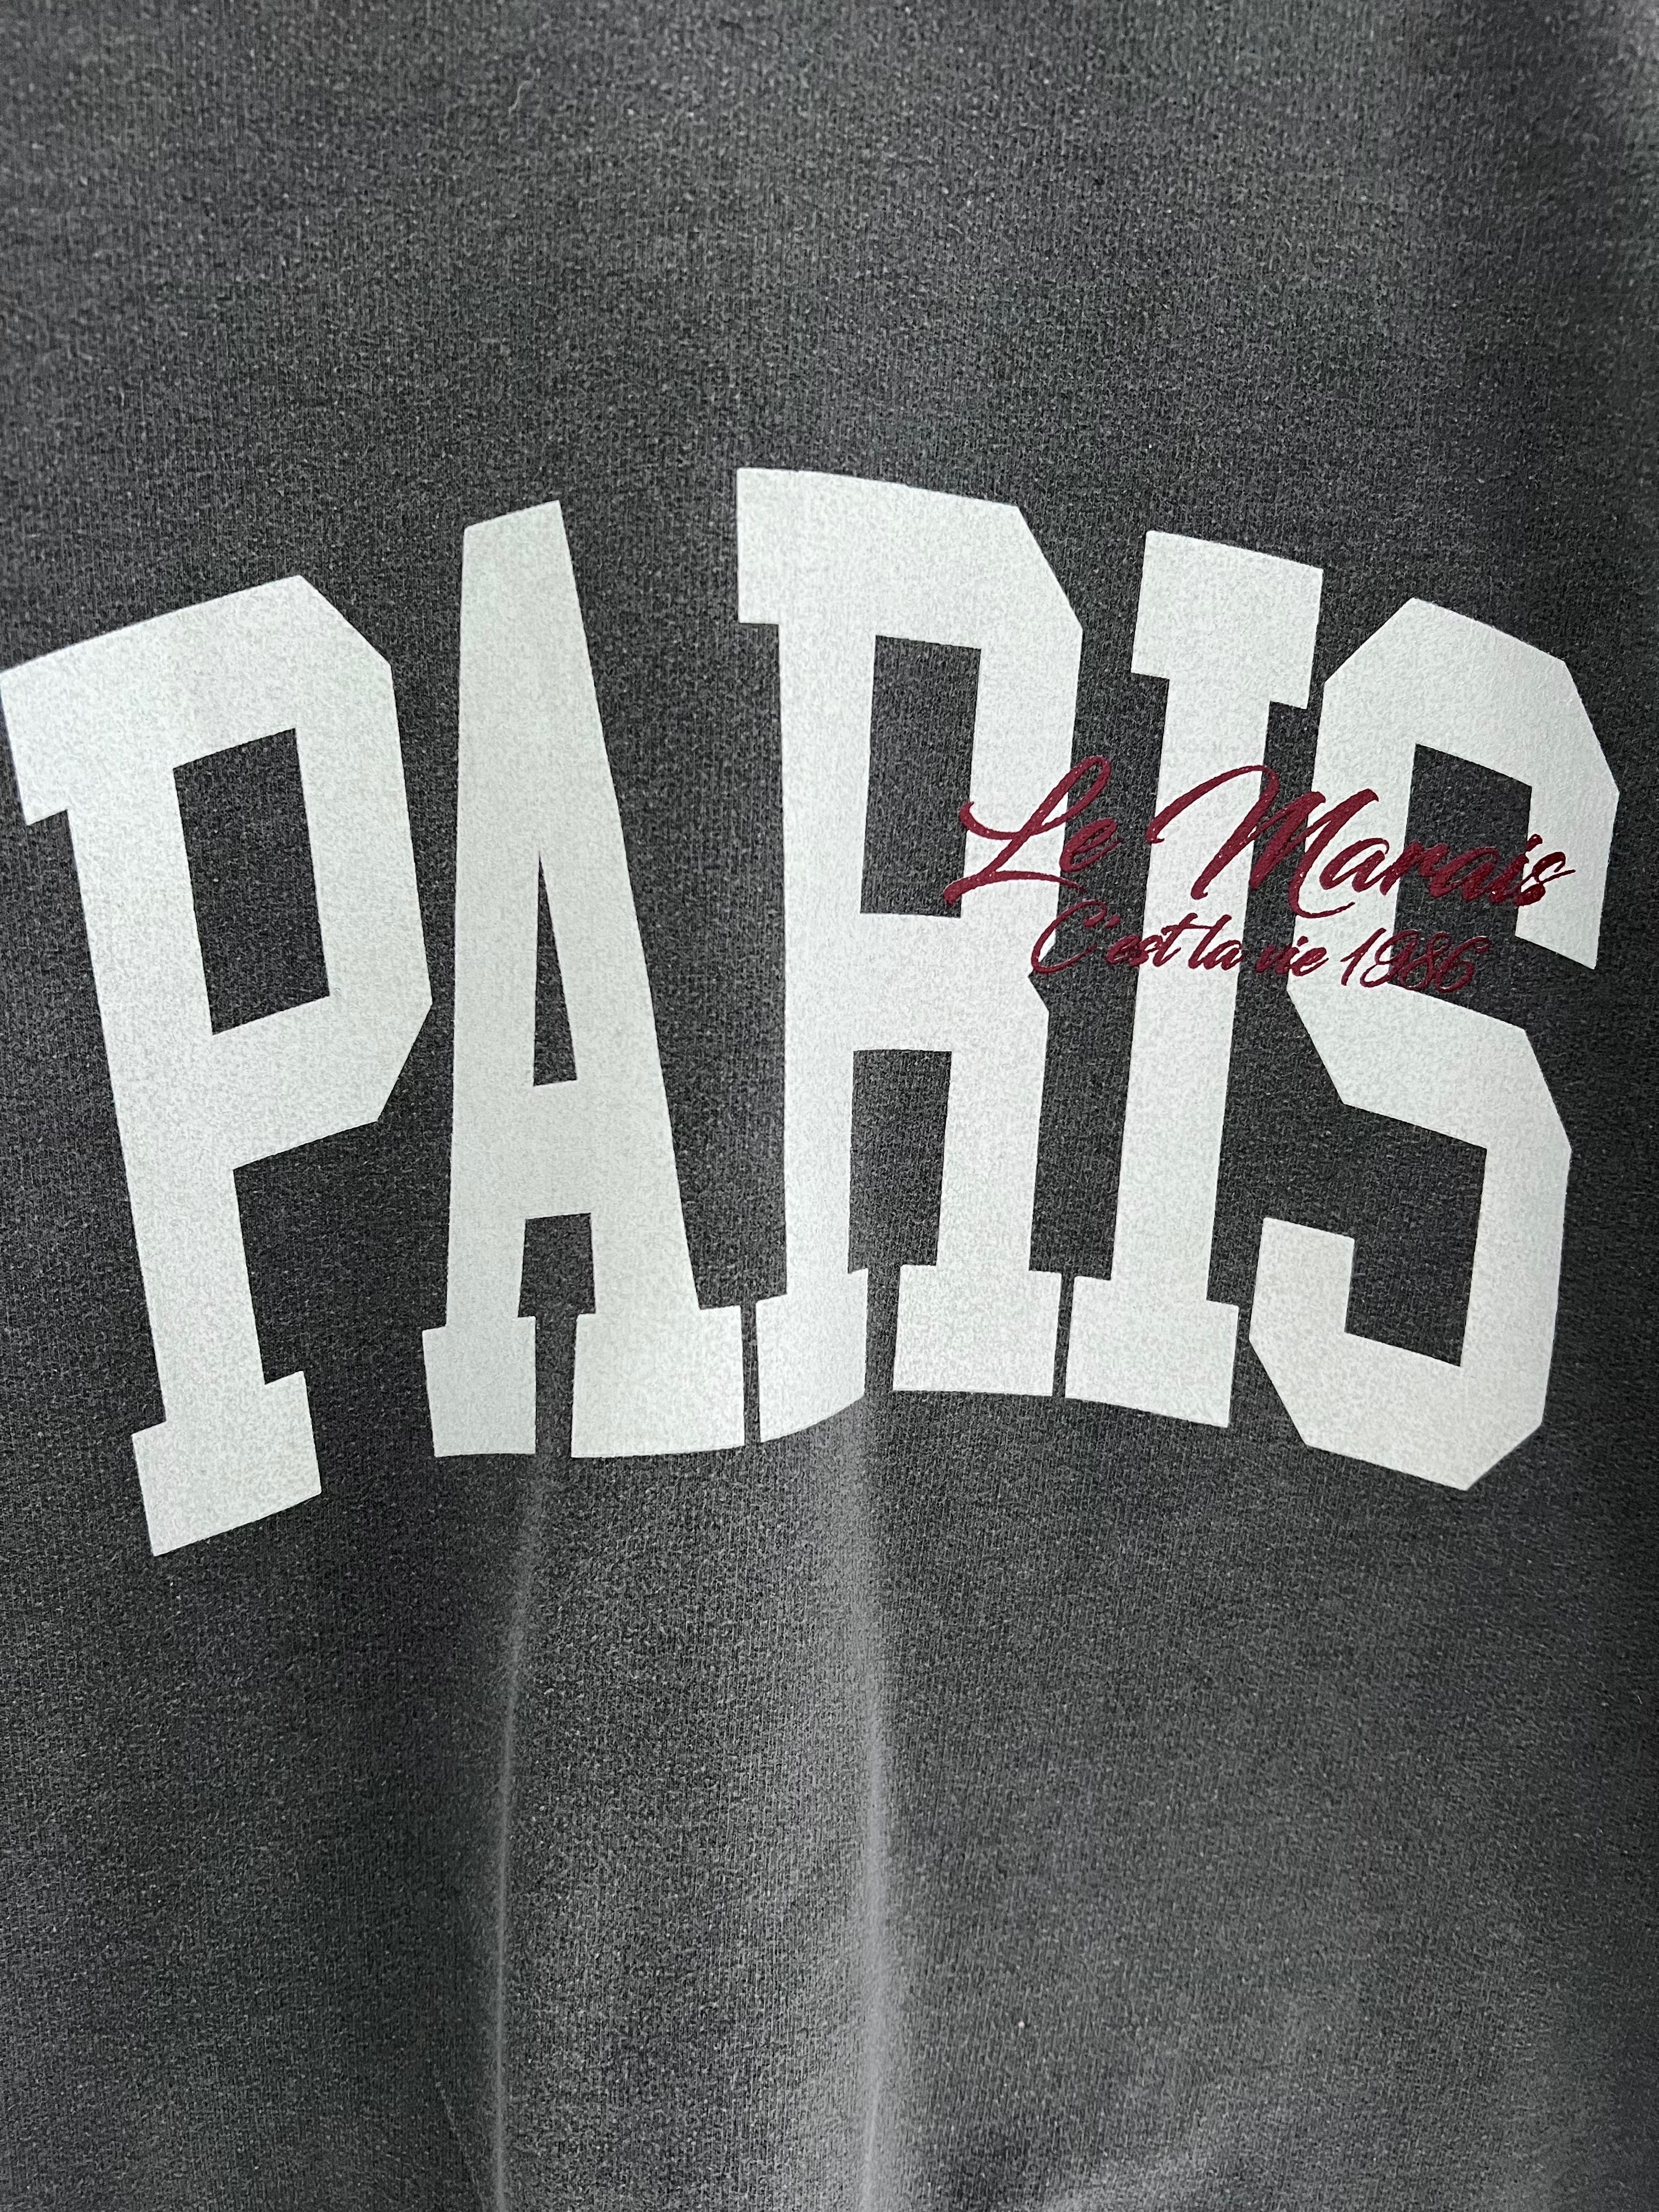 Vintage Wash Paris Sweatshirt in Charcoal